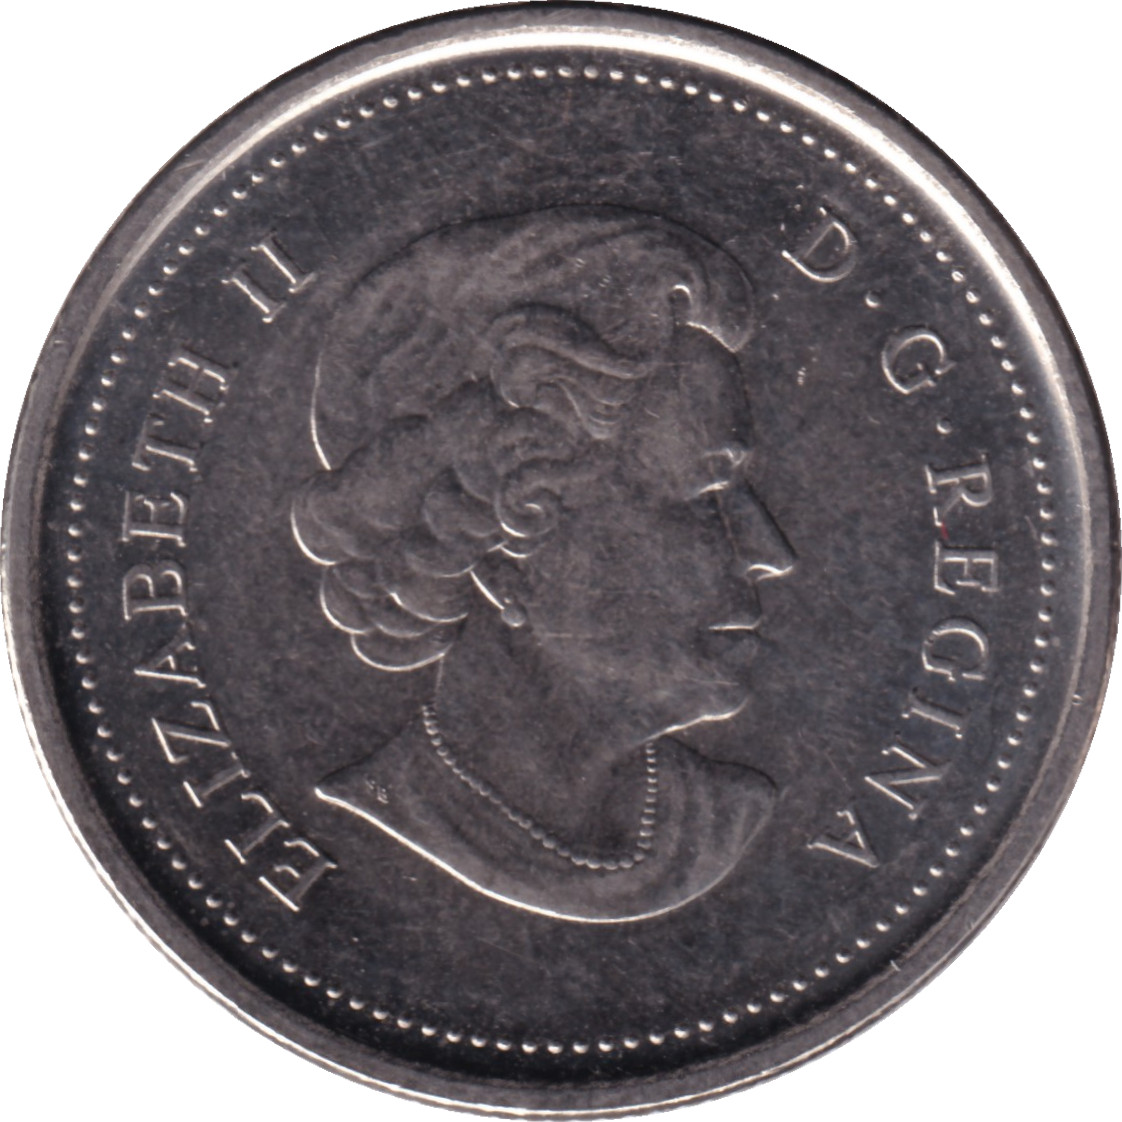 25 cents - Faucon Pélerin